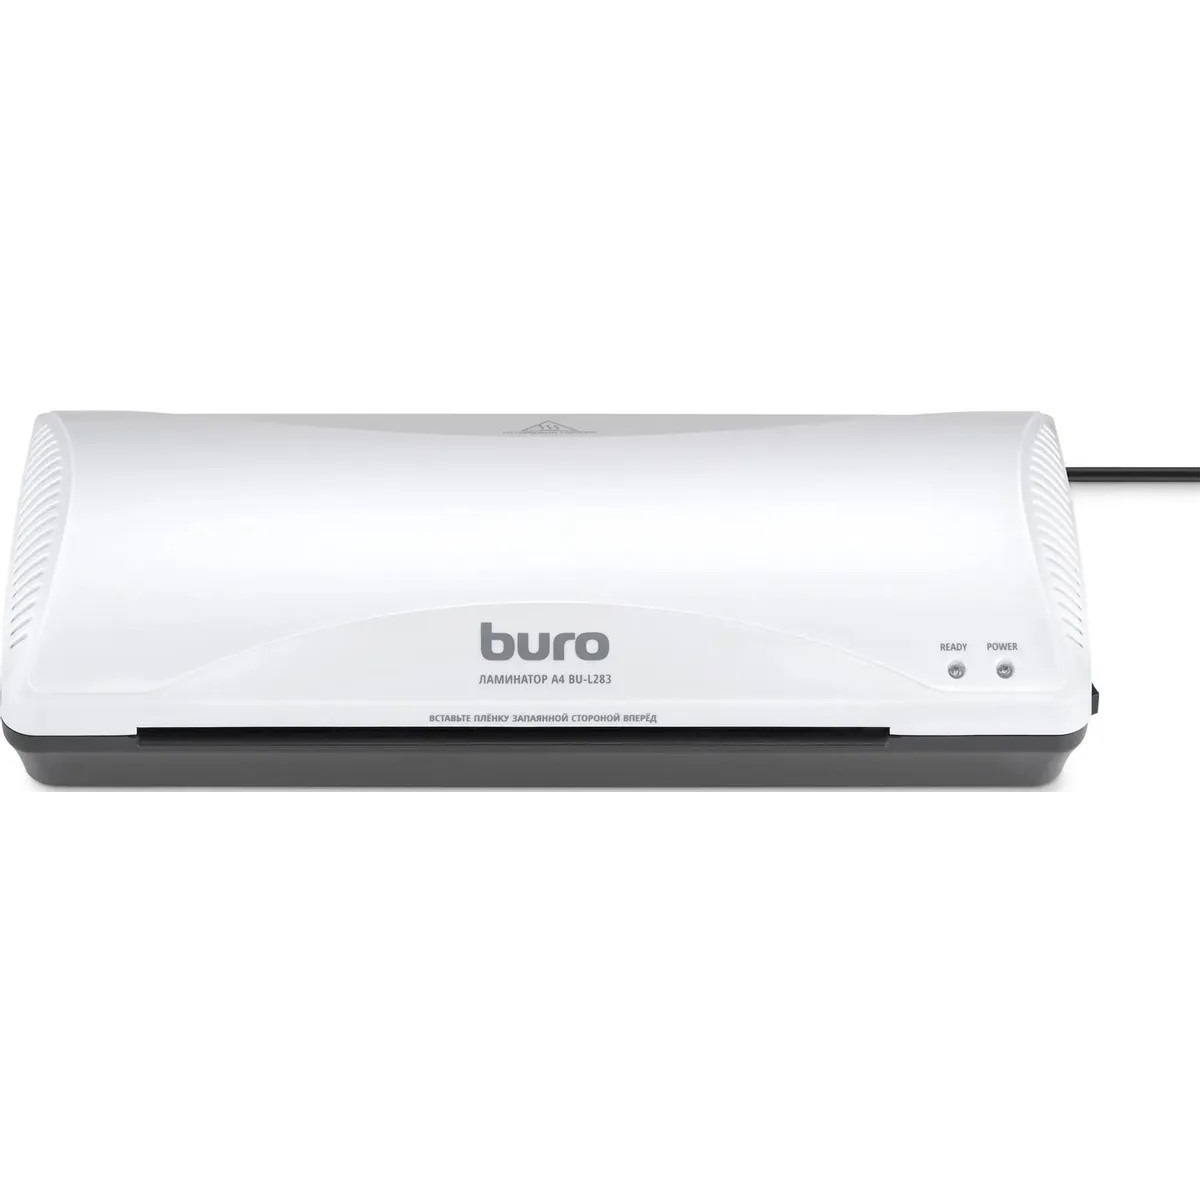 Ламинатор Buro BU-L283, белый